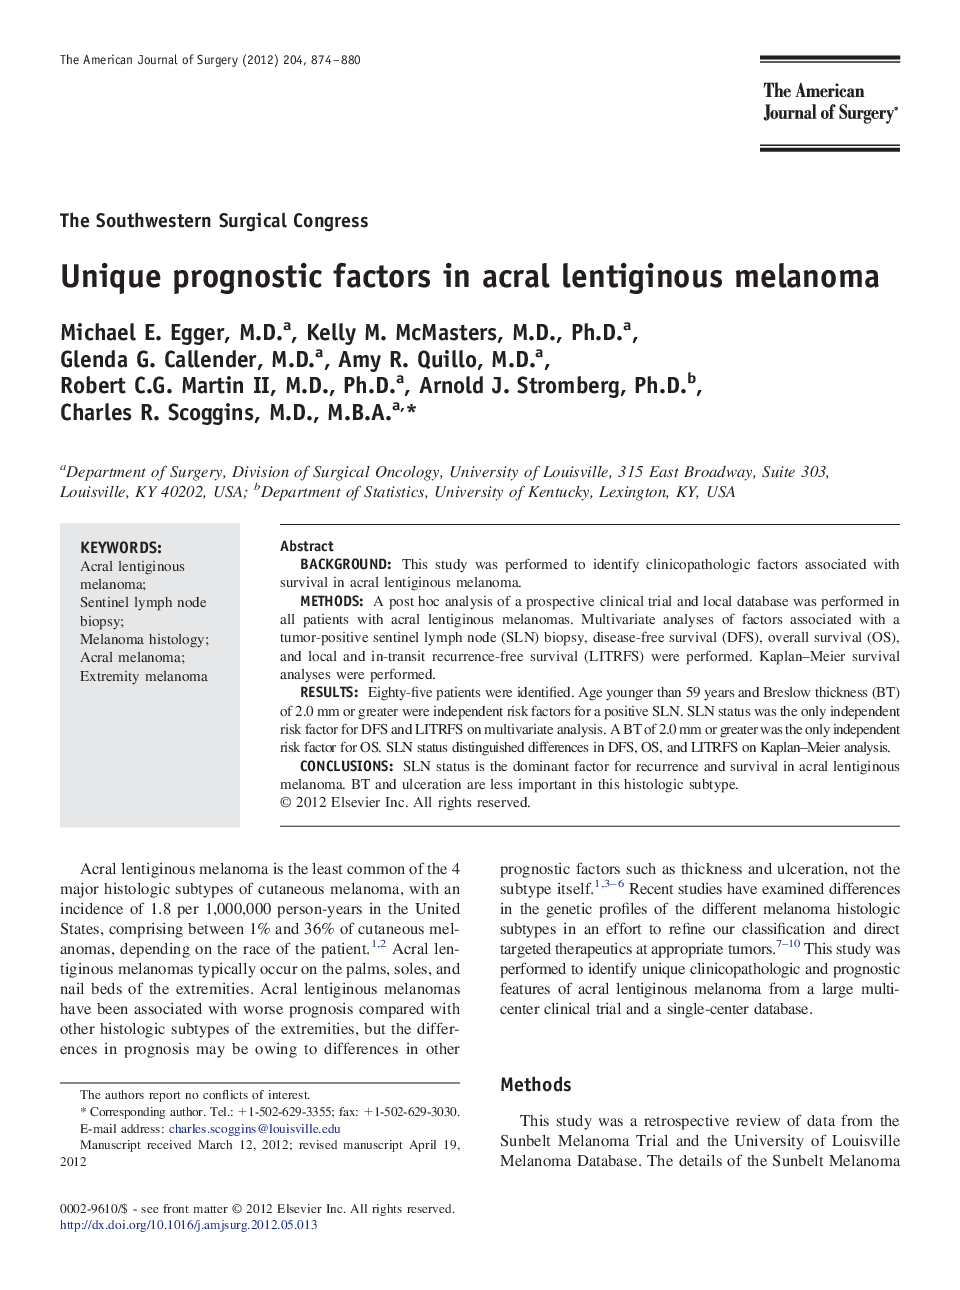 Unique prognostic factors in acral lentiginous melanoma 